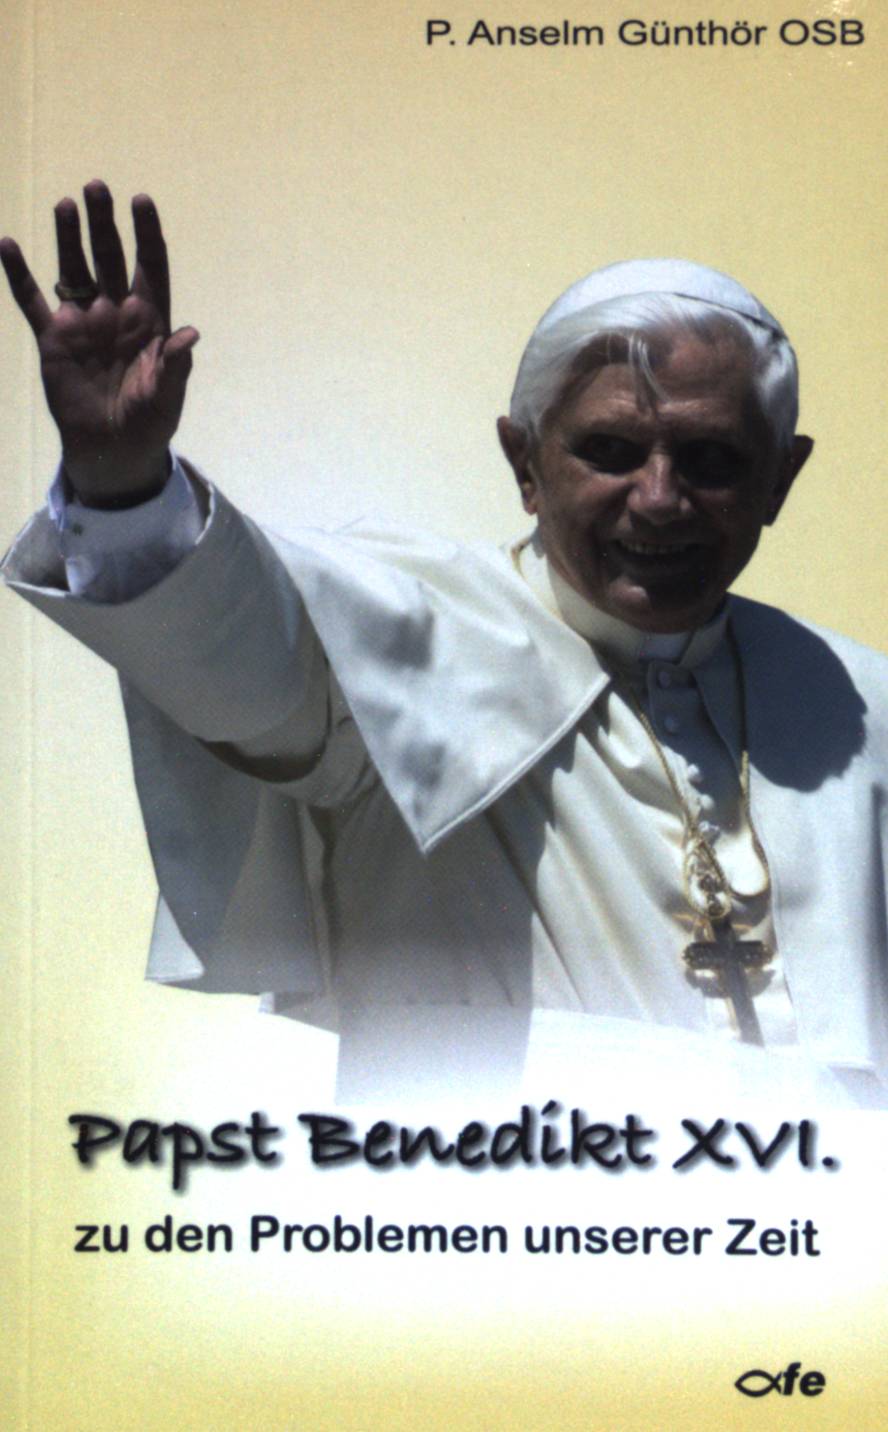 Papst Benedikt XVI. zu den Problemen unserer Zeit. - Günthör, Anselm P.